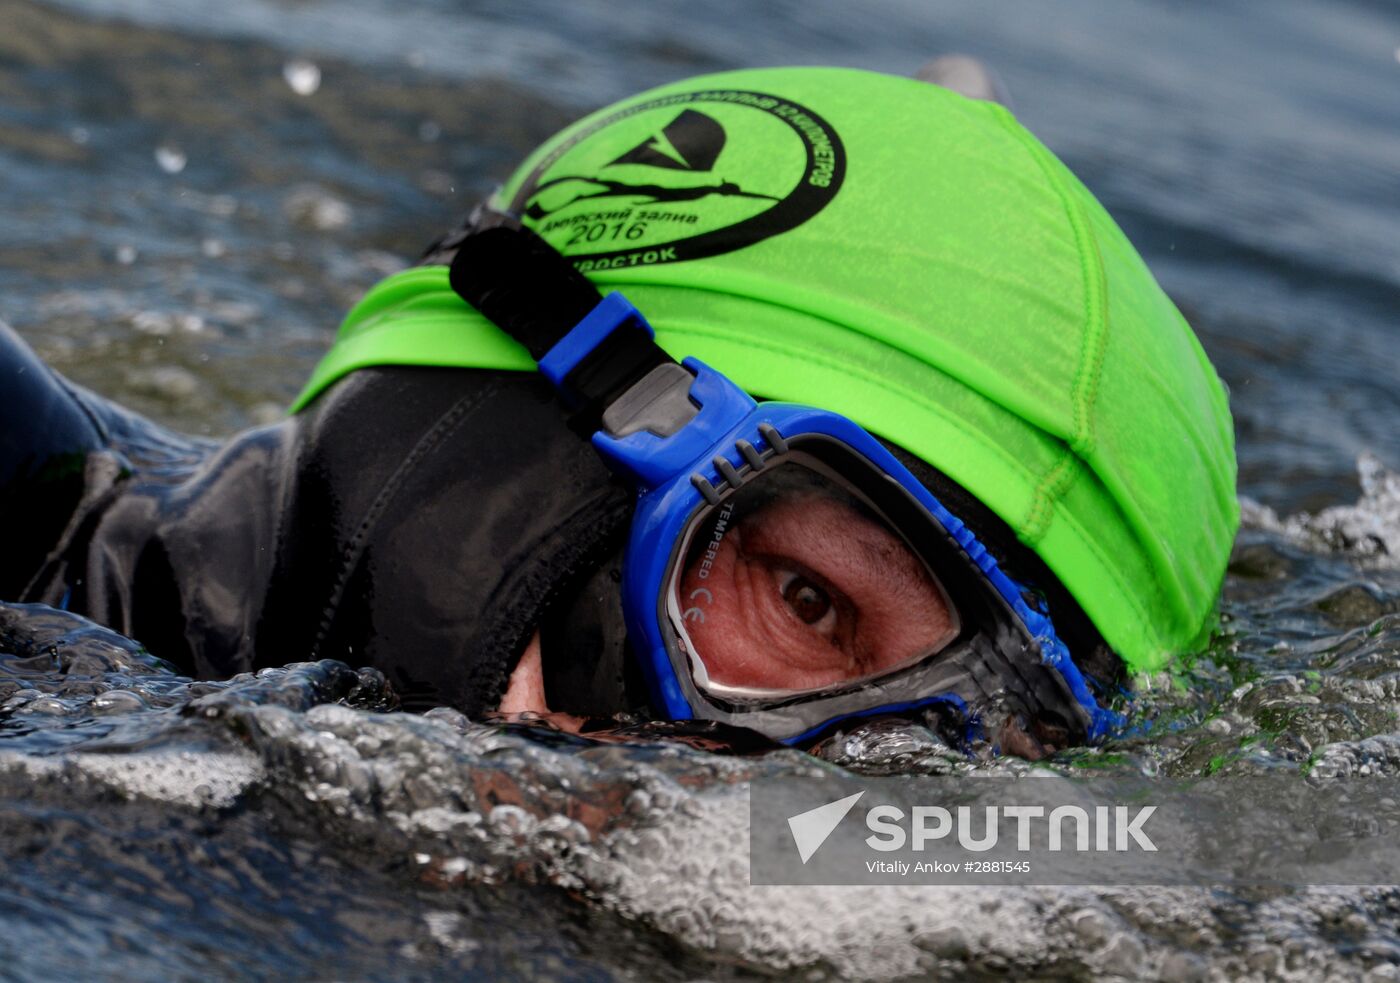 Marathon swim across Amur Bay in Vladivostok